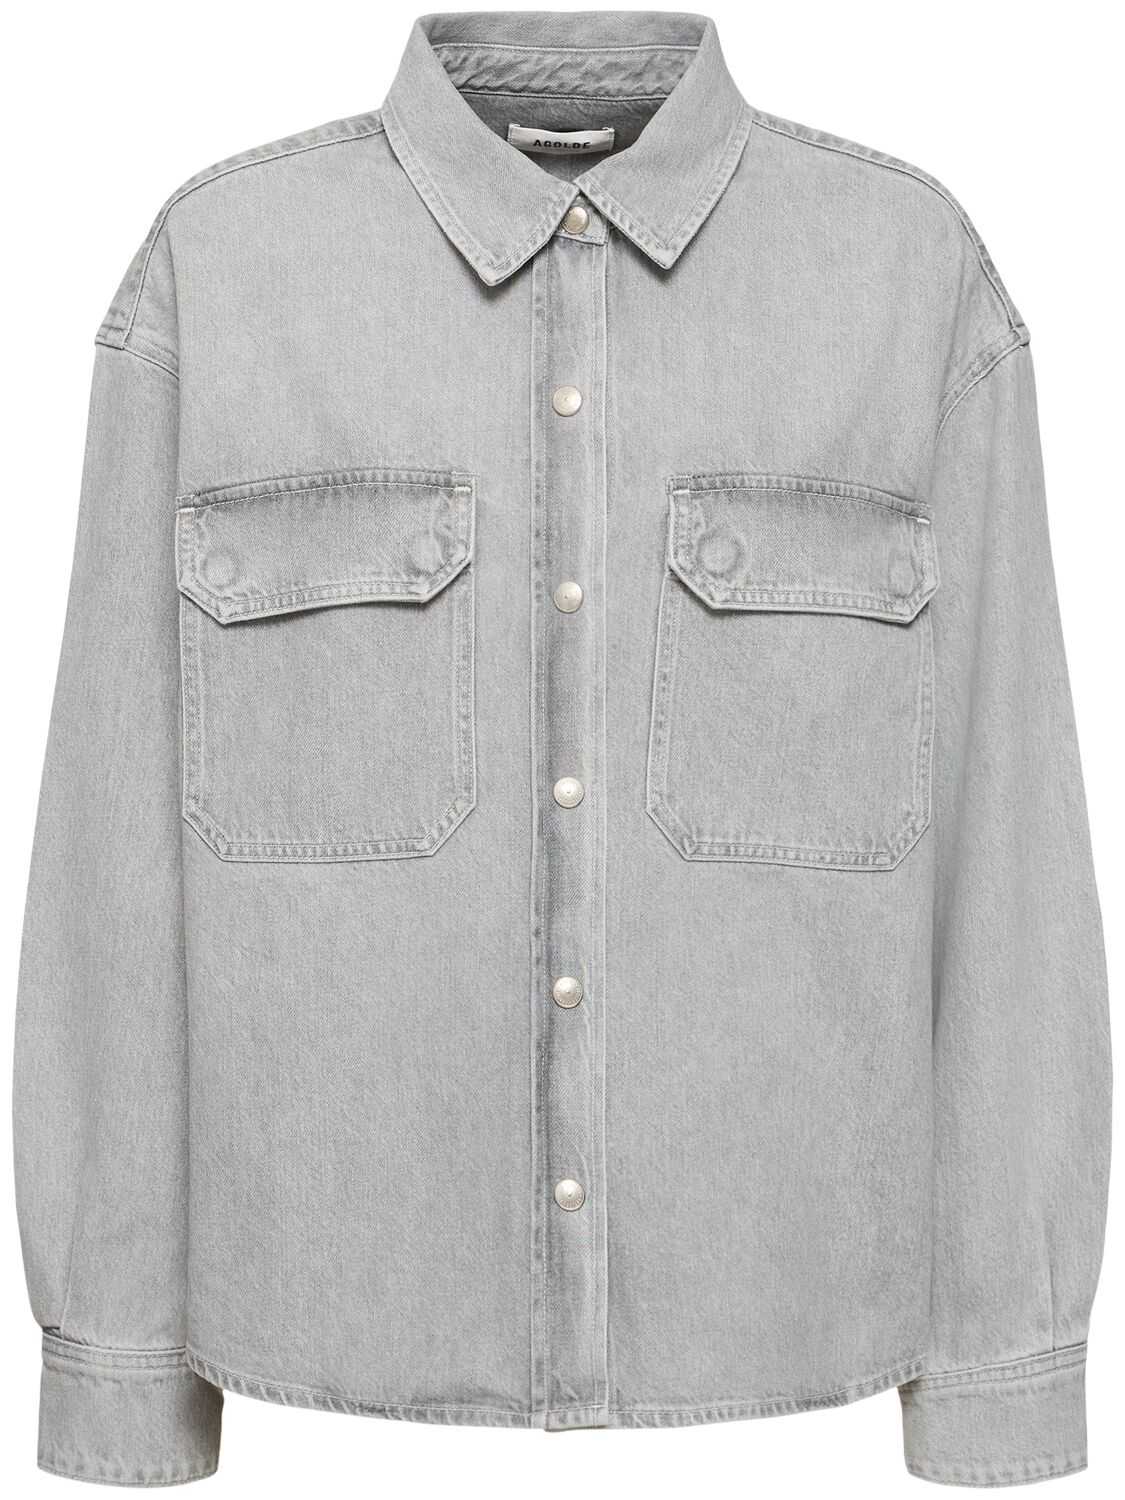 Agolde Gwen Slice Cotton Denim Shirt In Grey